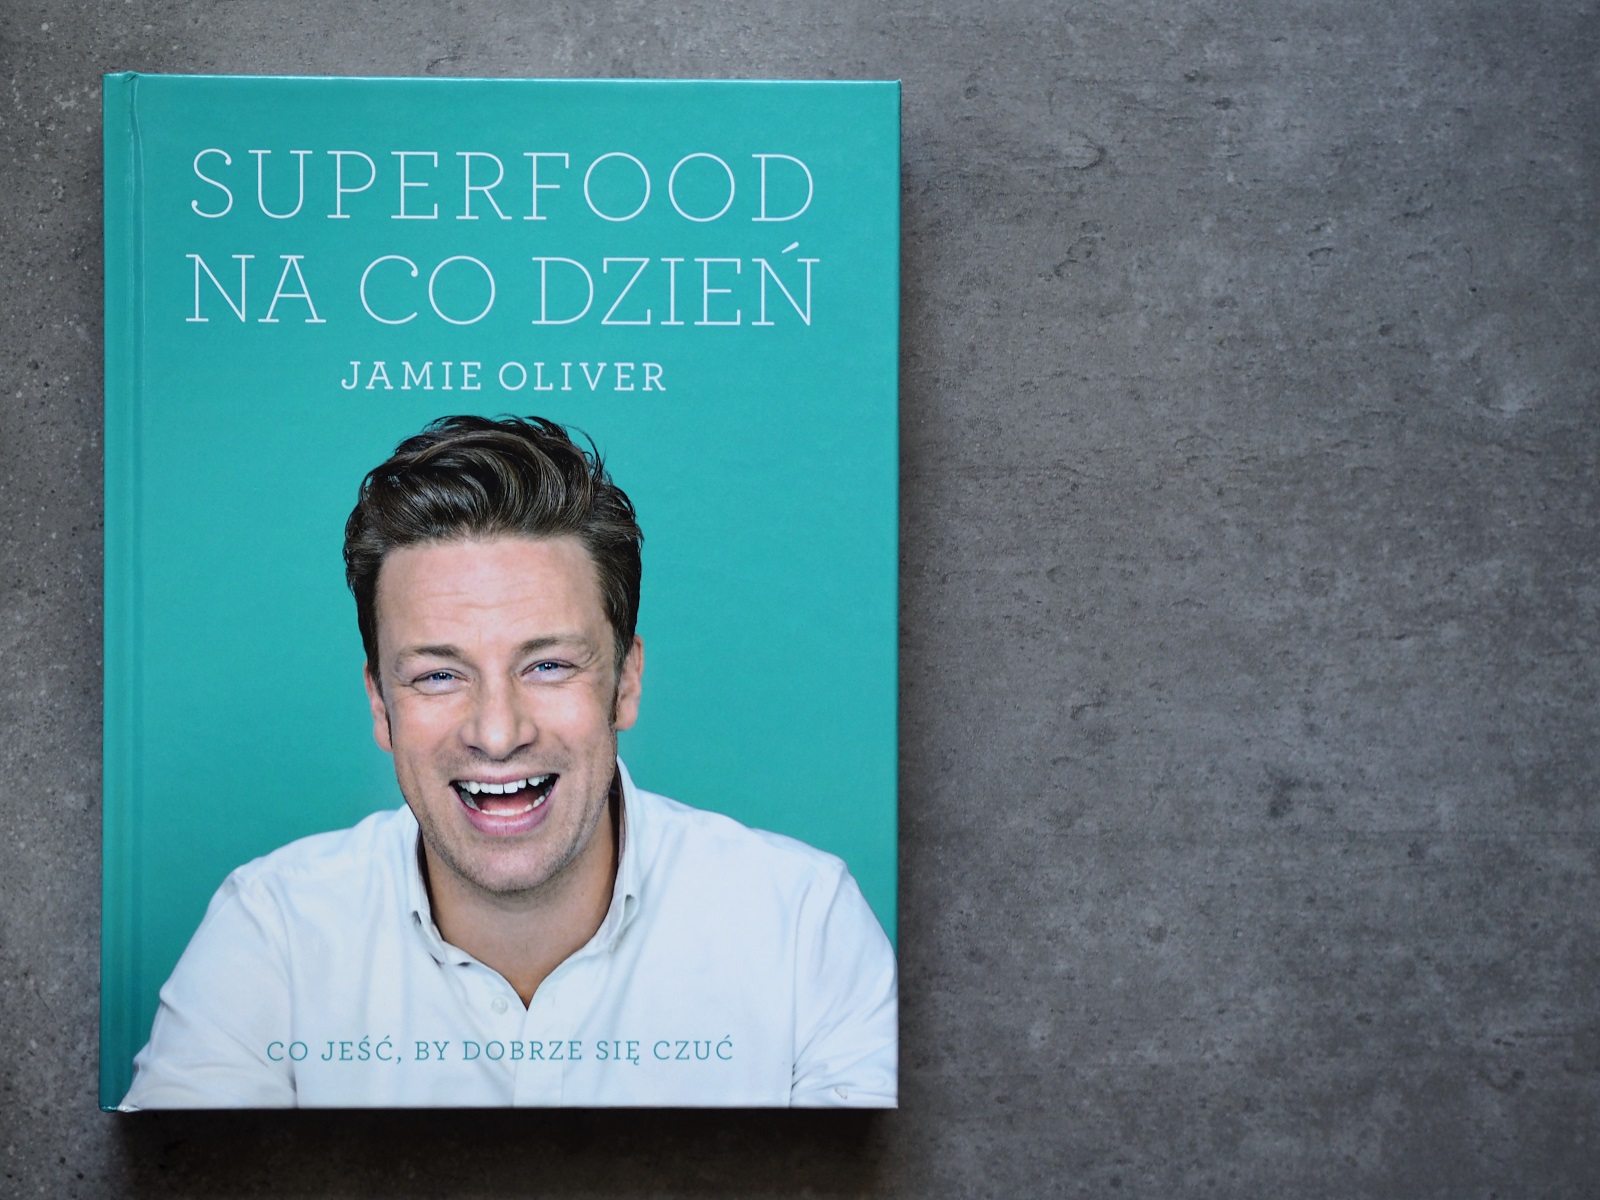 Superfood na co dzień – Jamie Olivier